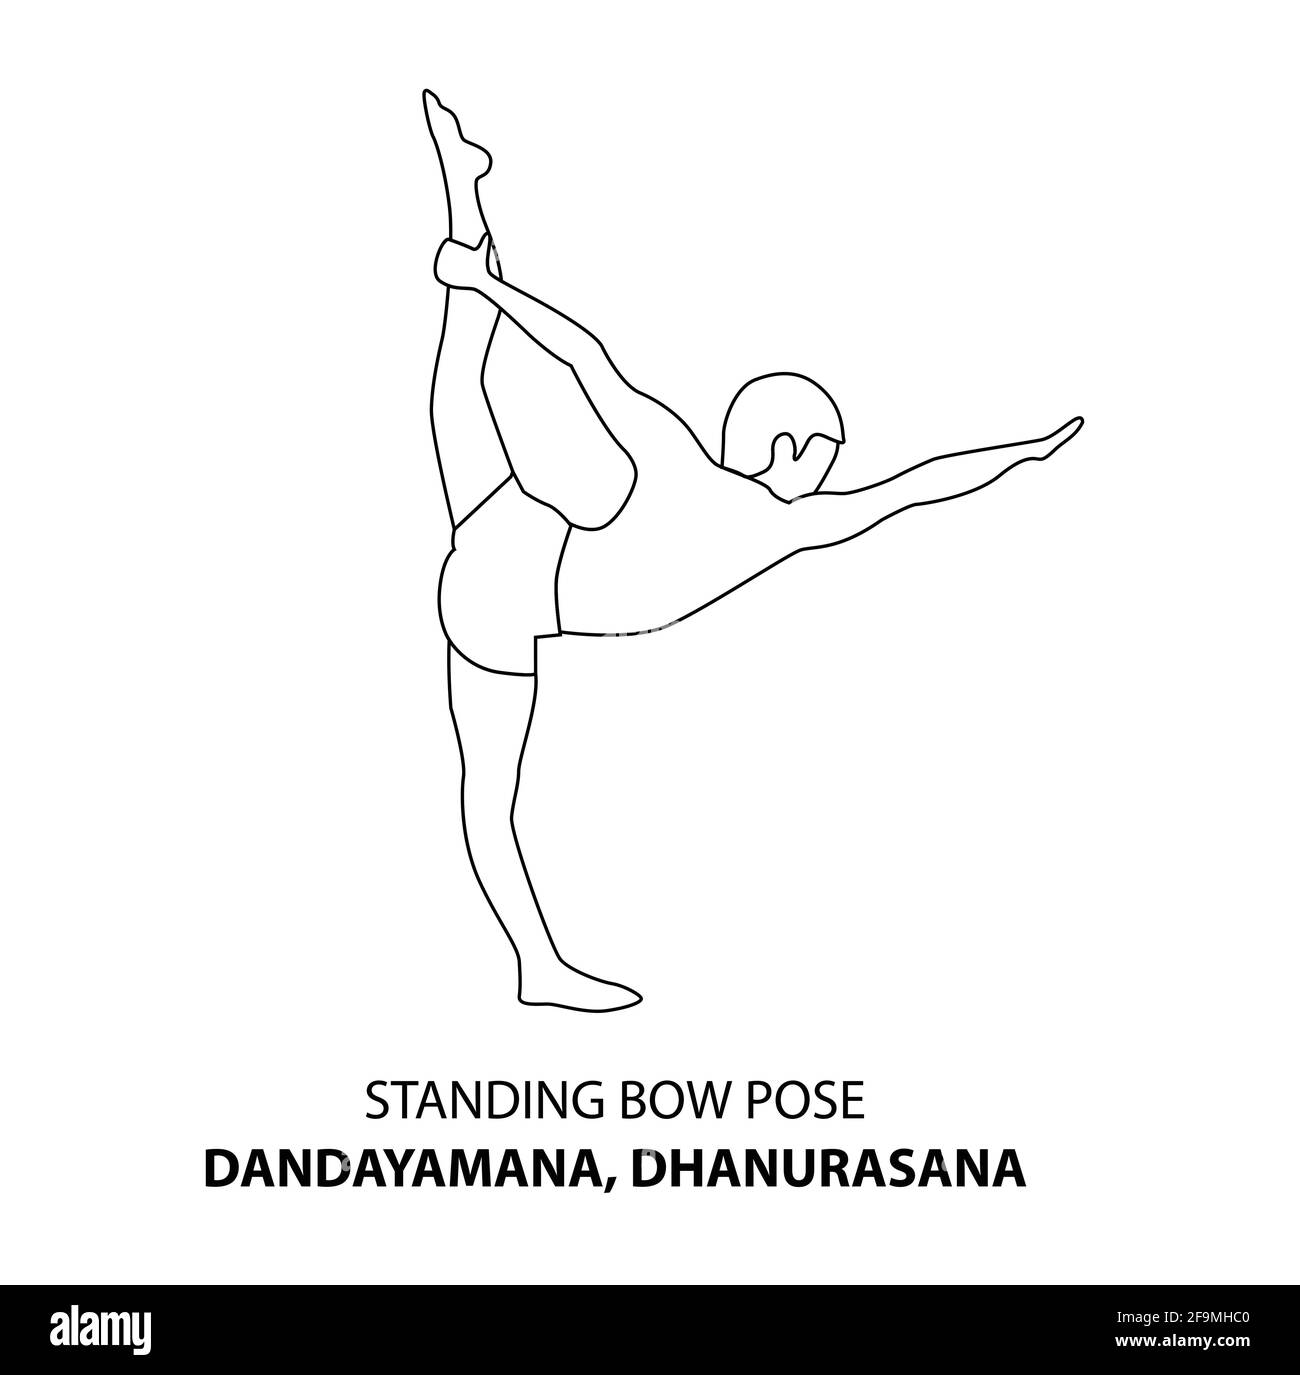 Homme pratiquant le yoga pose isolé contour Illustration. Homme debout dans l'arc debout pose dandayamana, dhanurasana pose, icône de la ligne de Yoga Asana Illustration de Vecteur